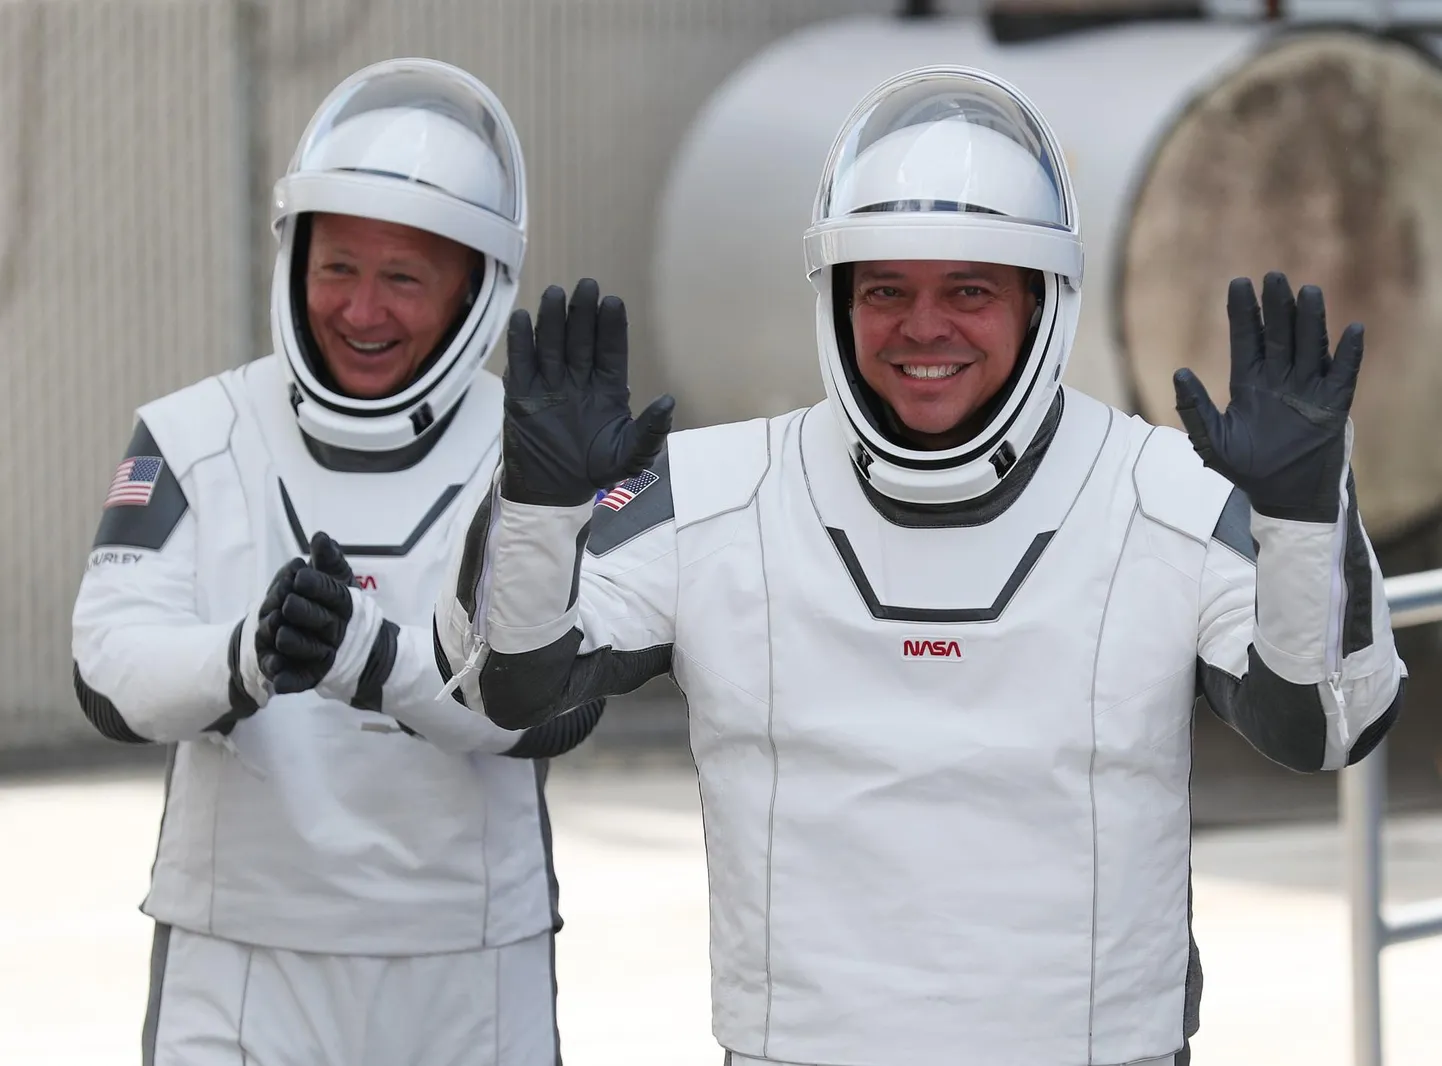 NASA astronaudid Bob Behnken (paremal) ja Doug Hurley (vasakul) 30. mail enne SpaceXi starti rahvusvahelisse kosmosejaama ISS.